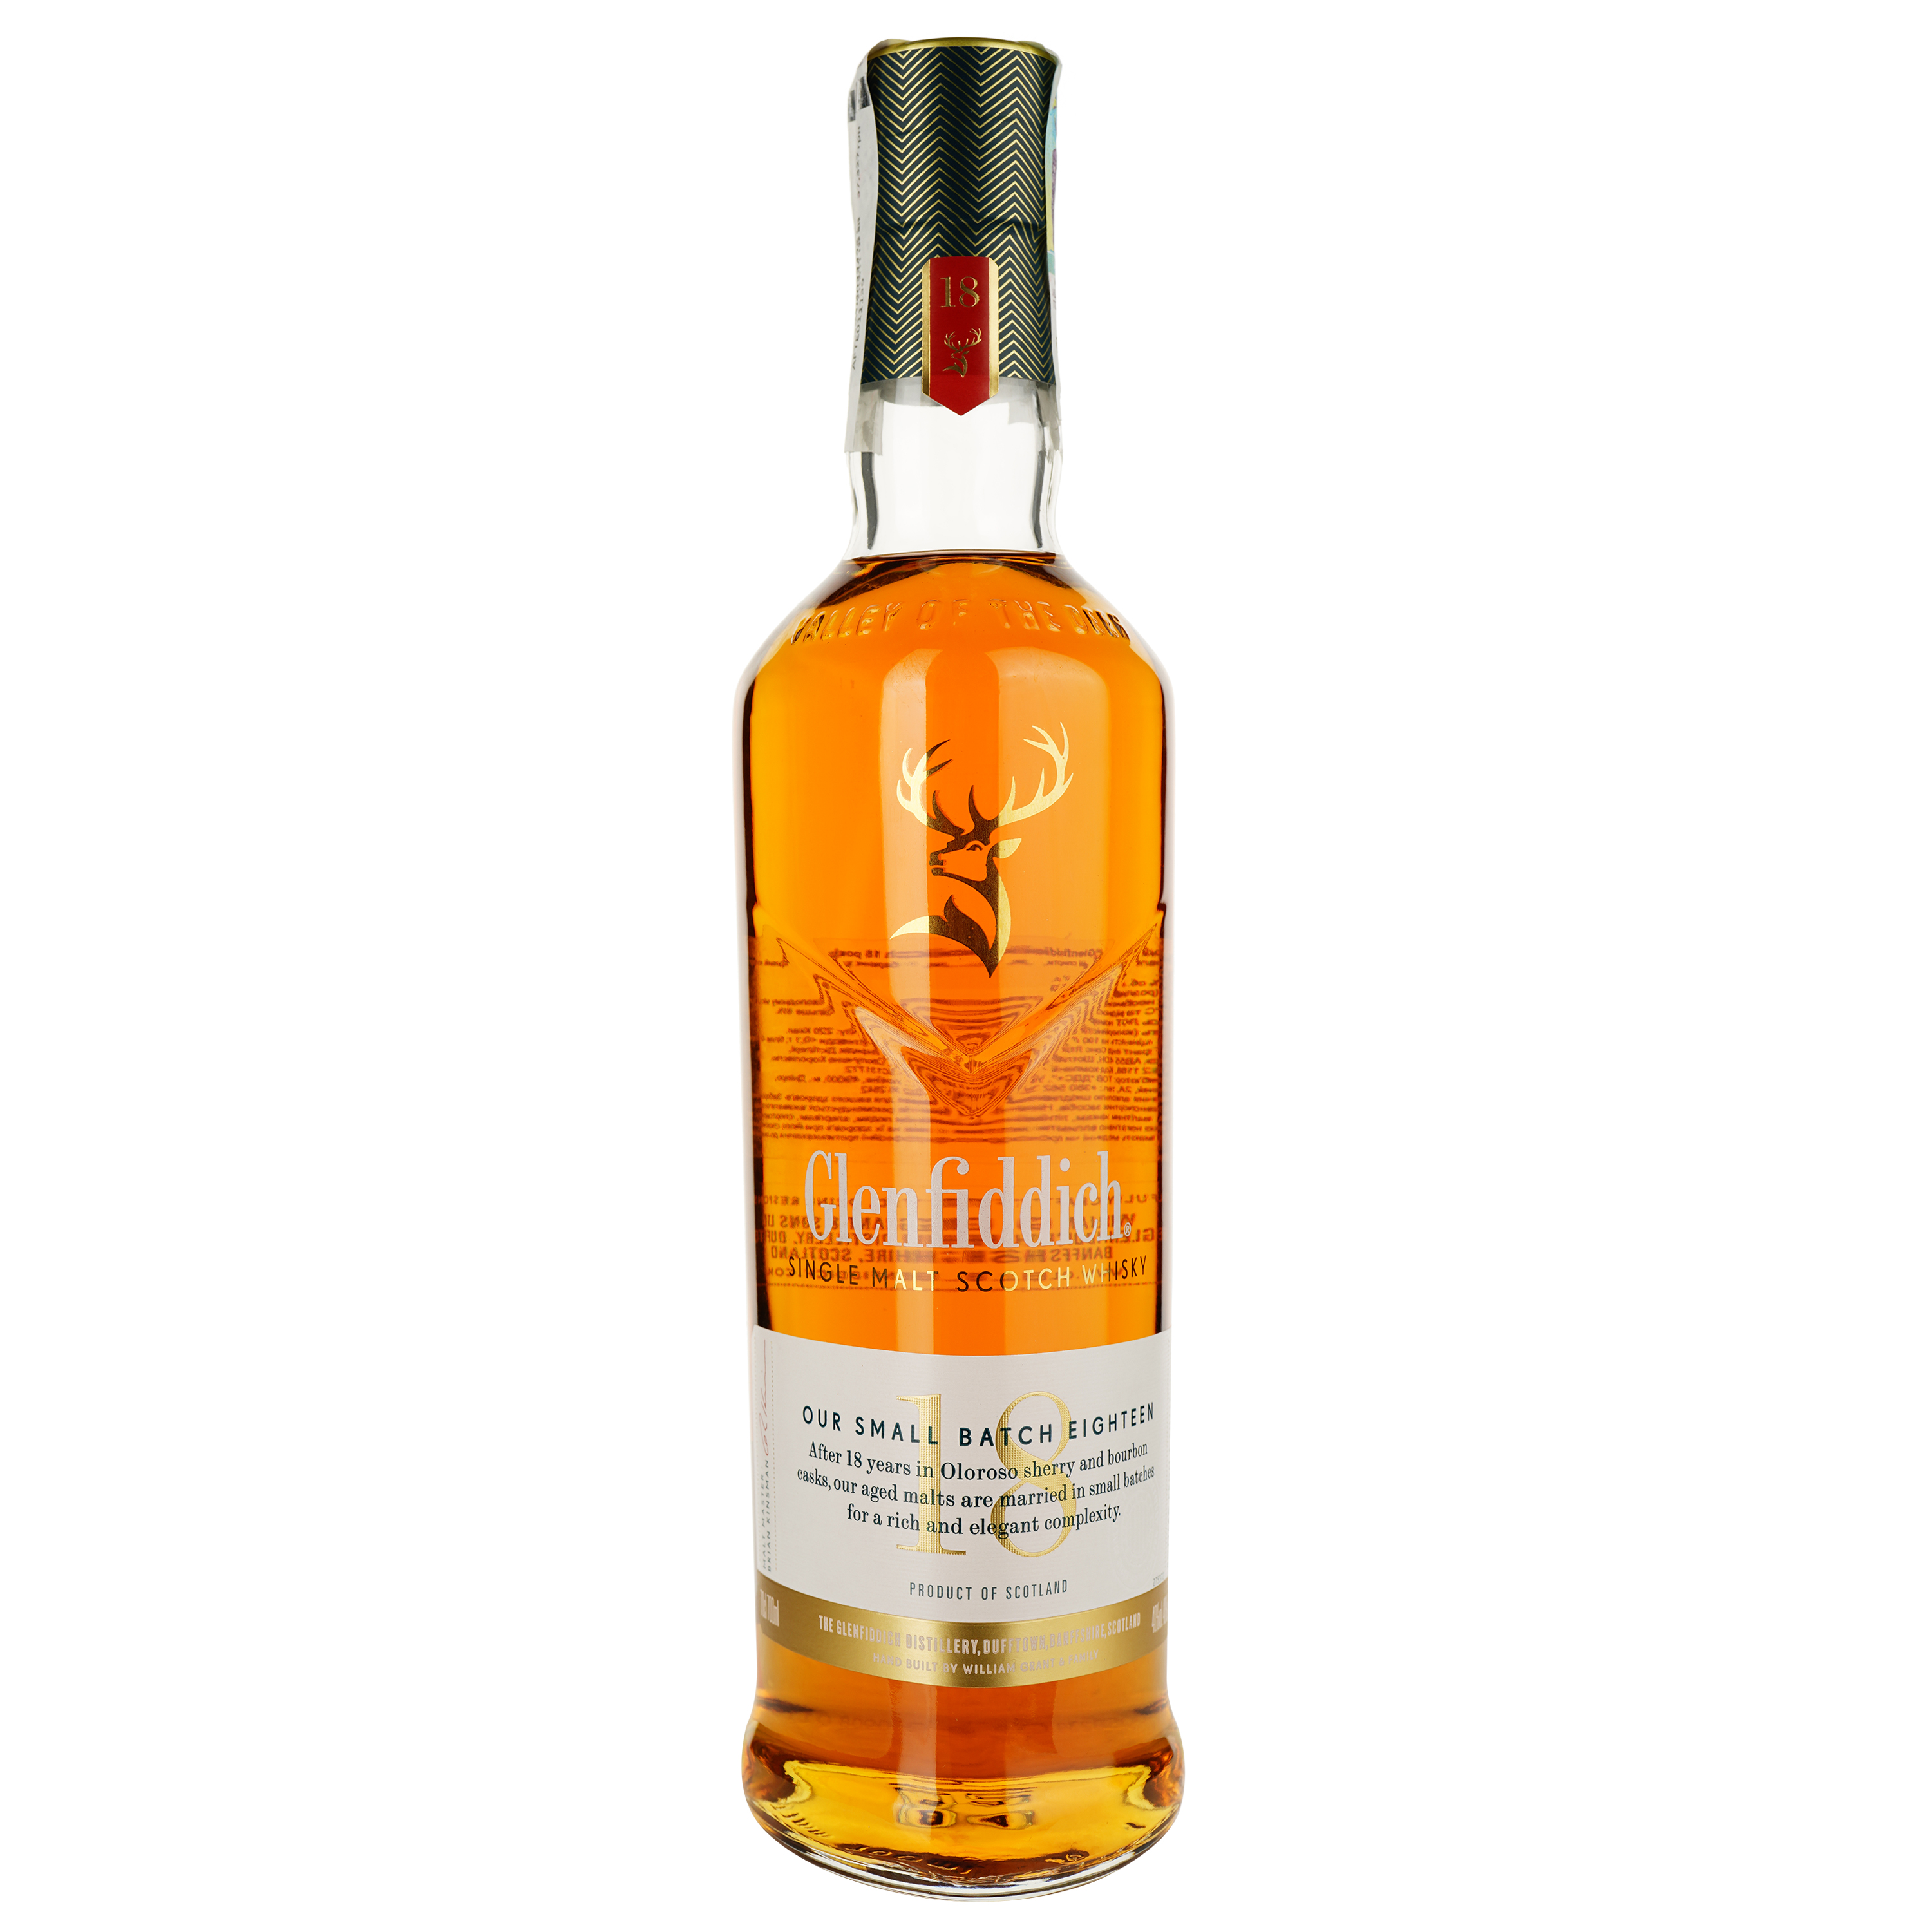 Віскі Glenfiddich Single Malt Scotch 18 yo, в подарунковій упаковці, 40%, 0,7 л (476800) - фото 2